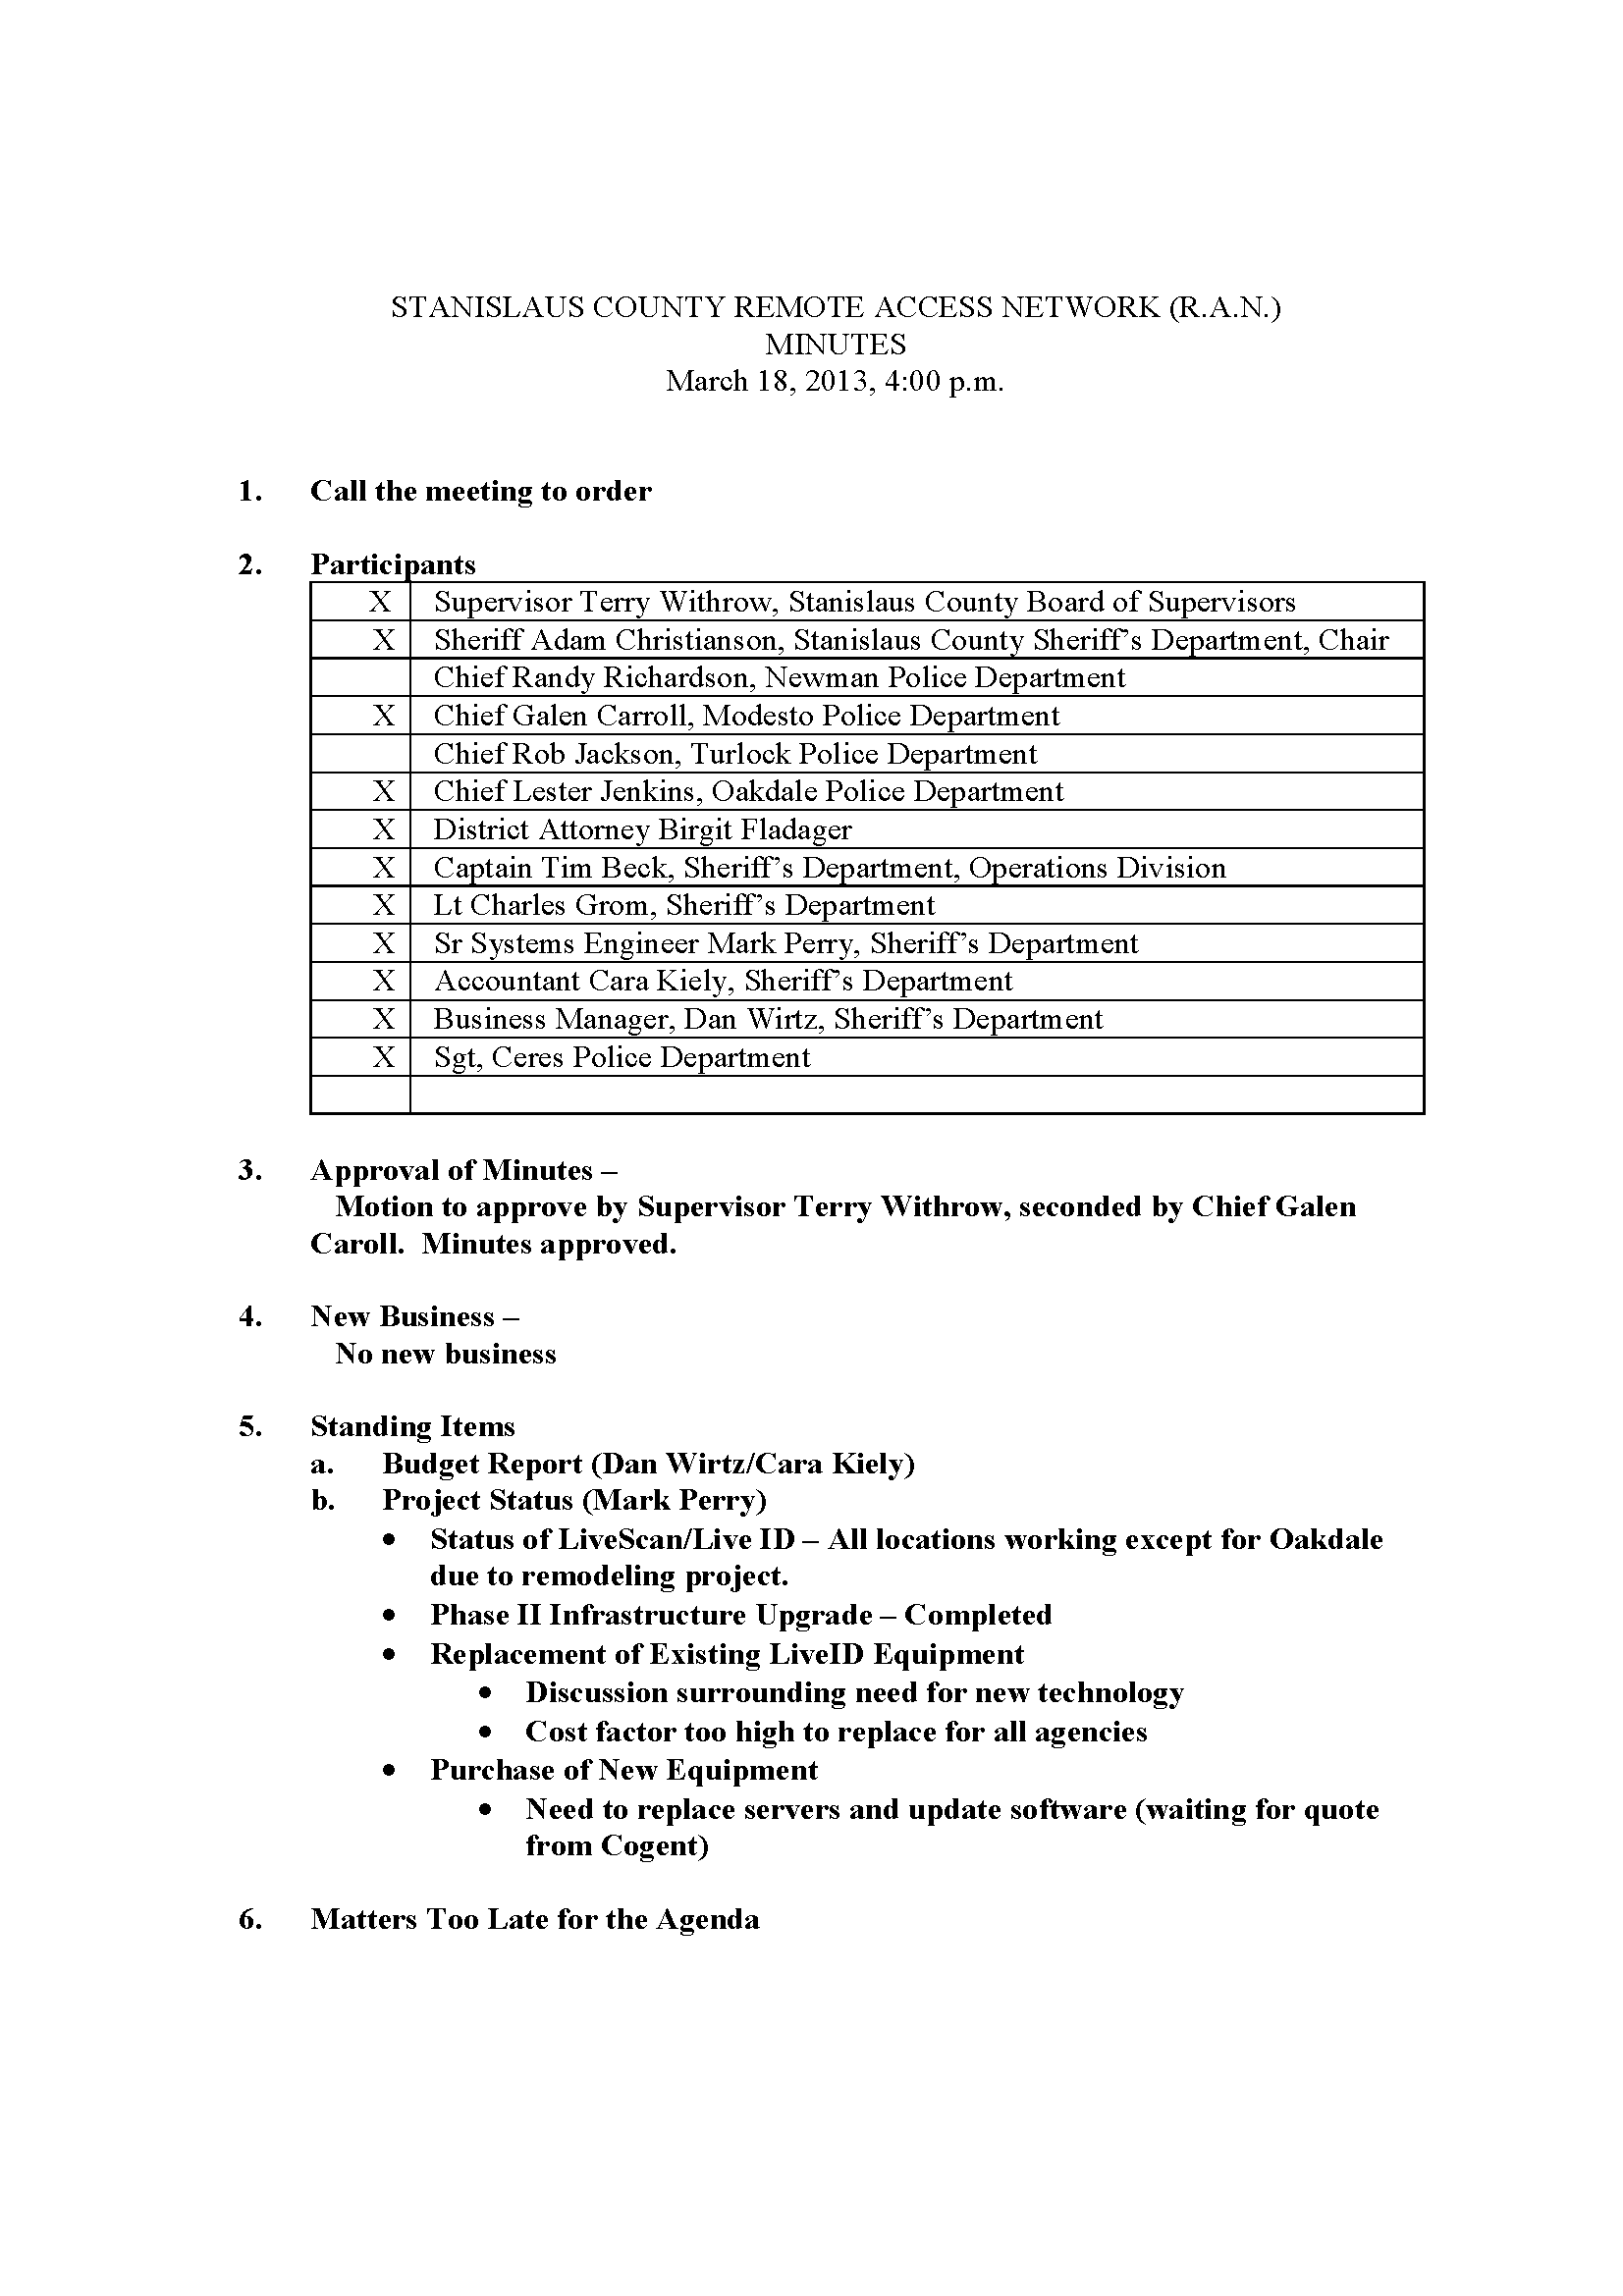 03182013 Agenda - RAN Board minutes 1 Page 1